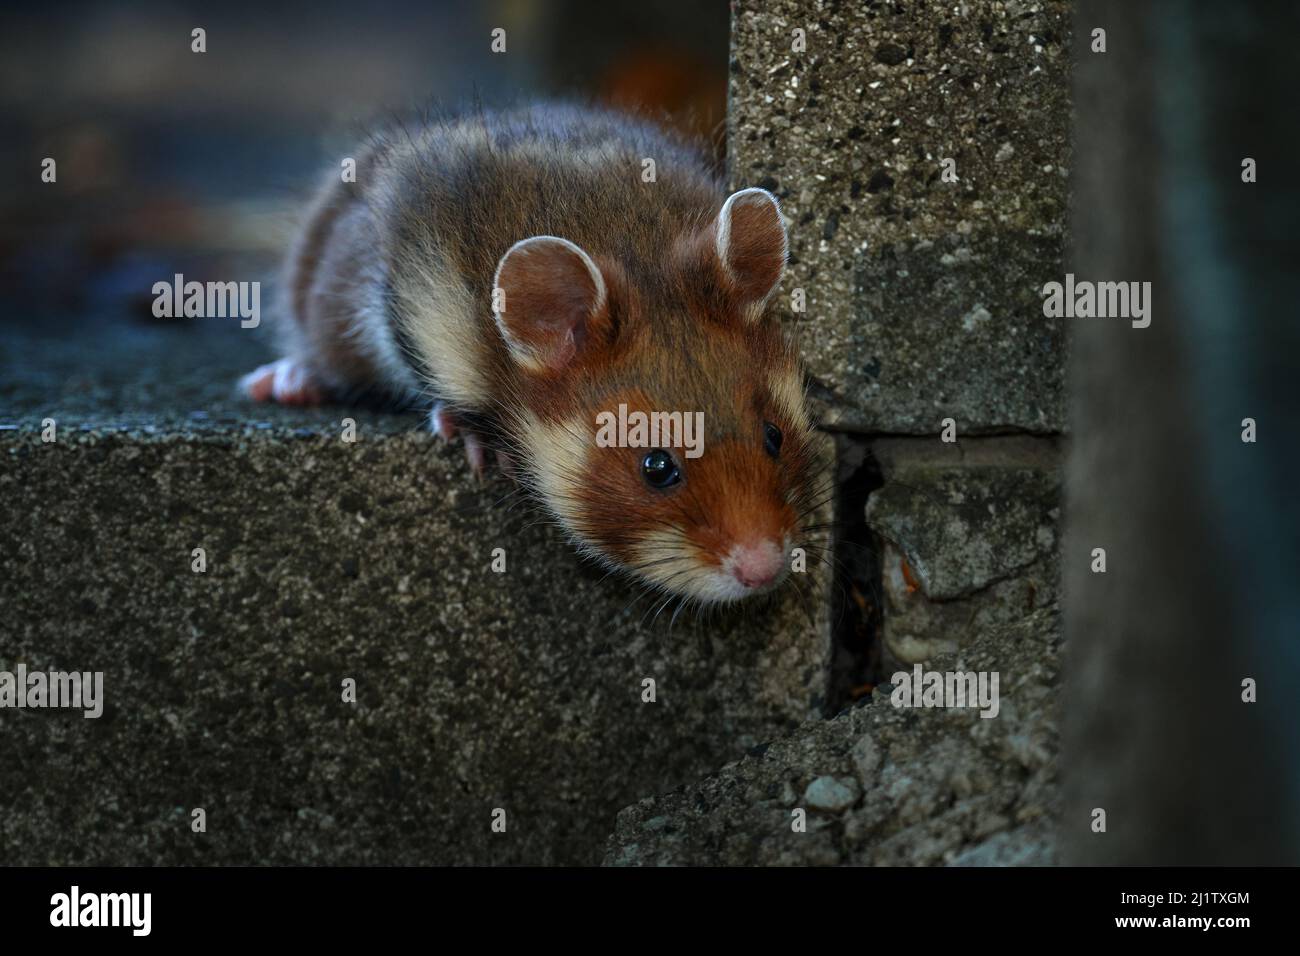 Hamster européen, Cricetus cricetus, cimetière en pierre tombale, Vienne, Autriche. Hamster brun et blanc à ventre noir, vue de face portrait dans le natu Banque D'Images